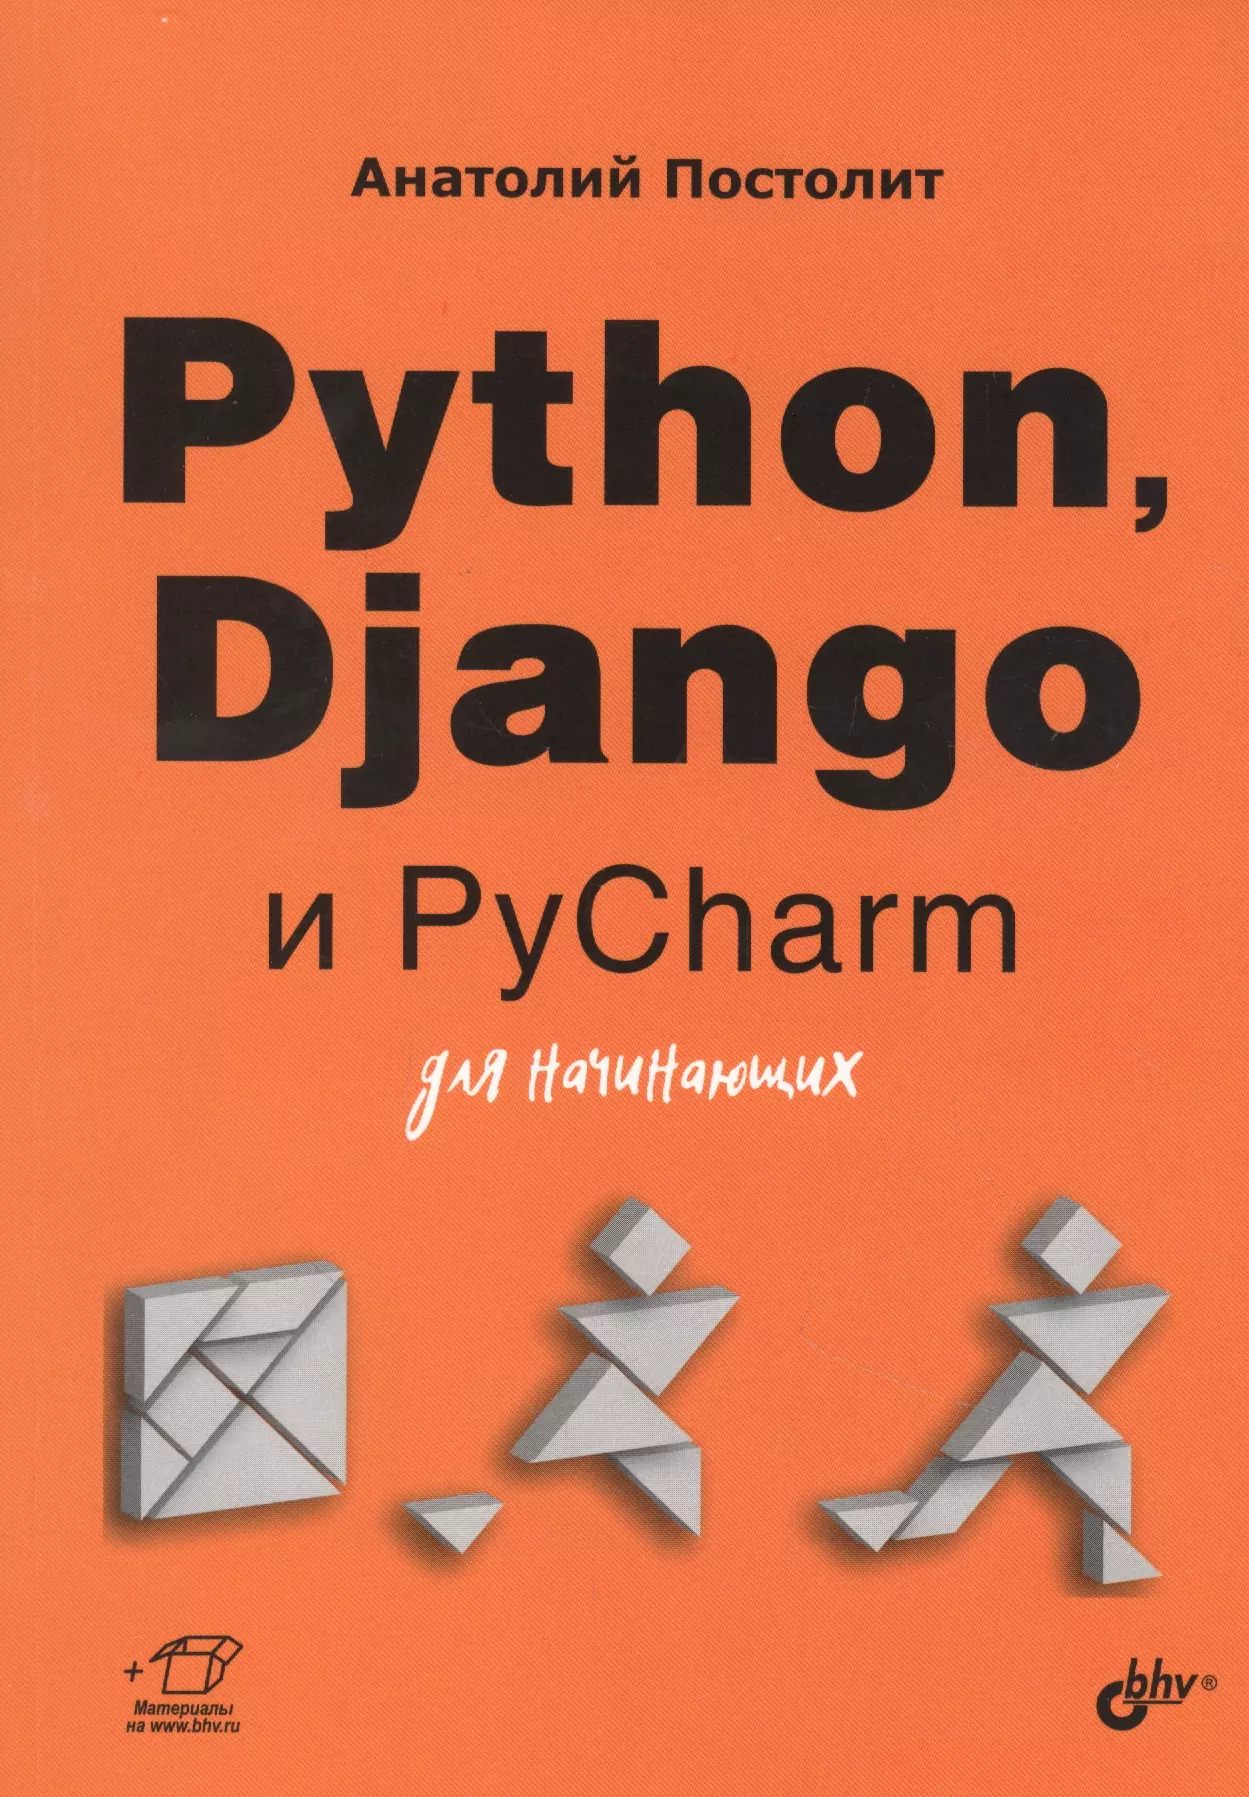 Постолит Анатолий - Python, Django и PyCharm для начинающих